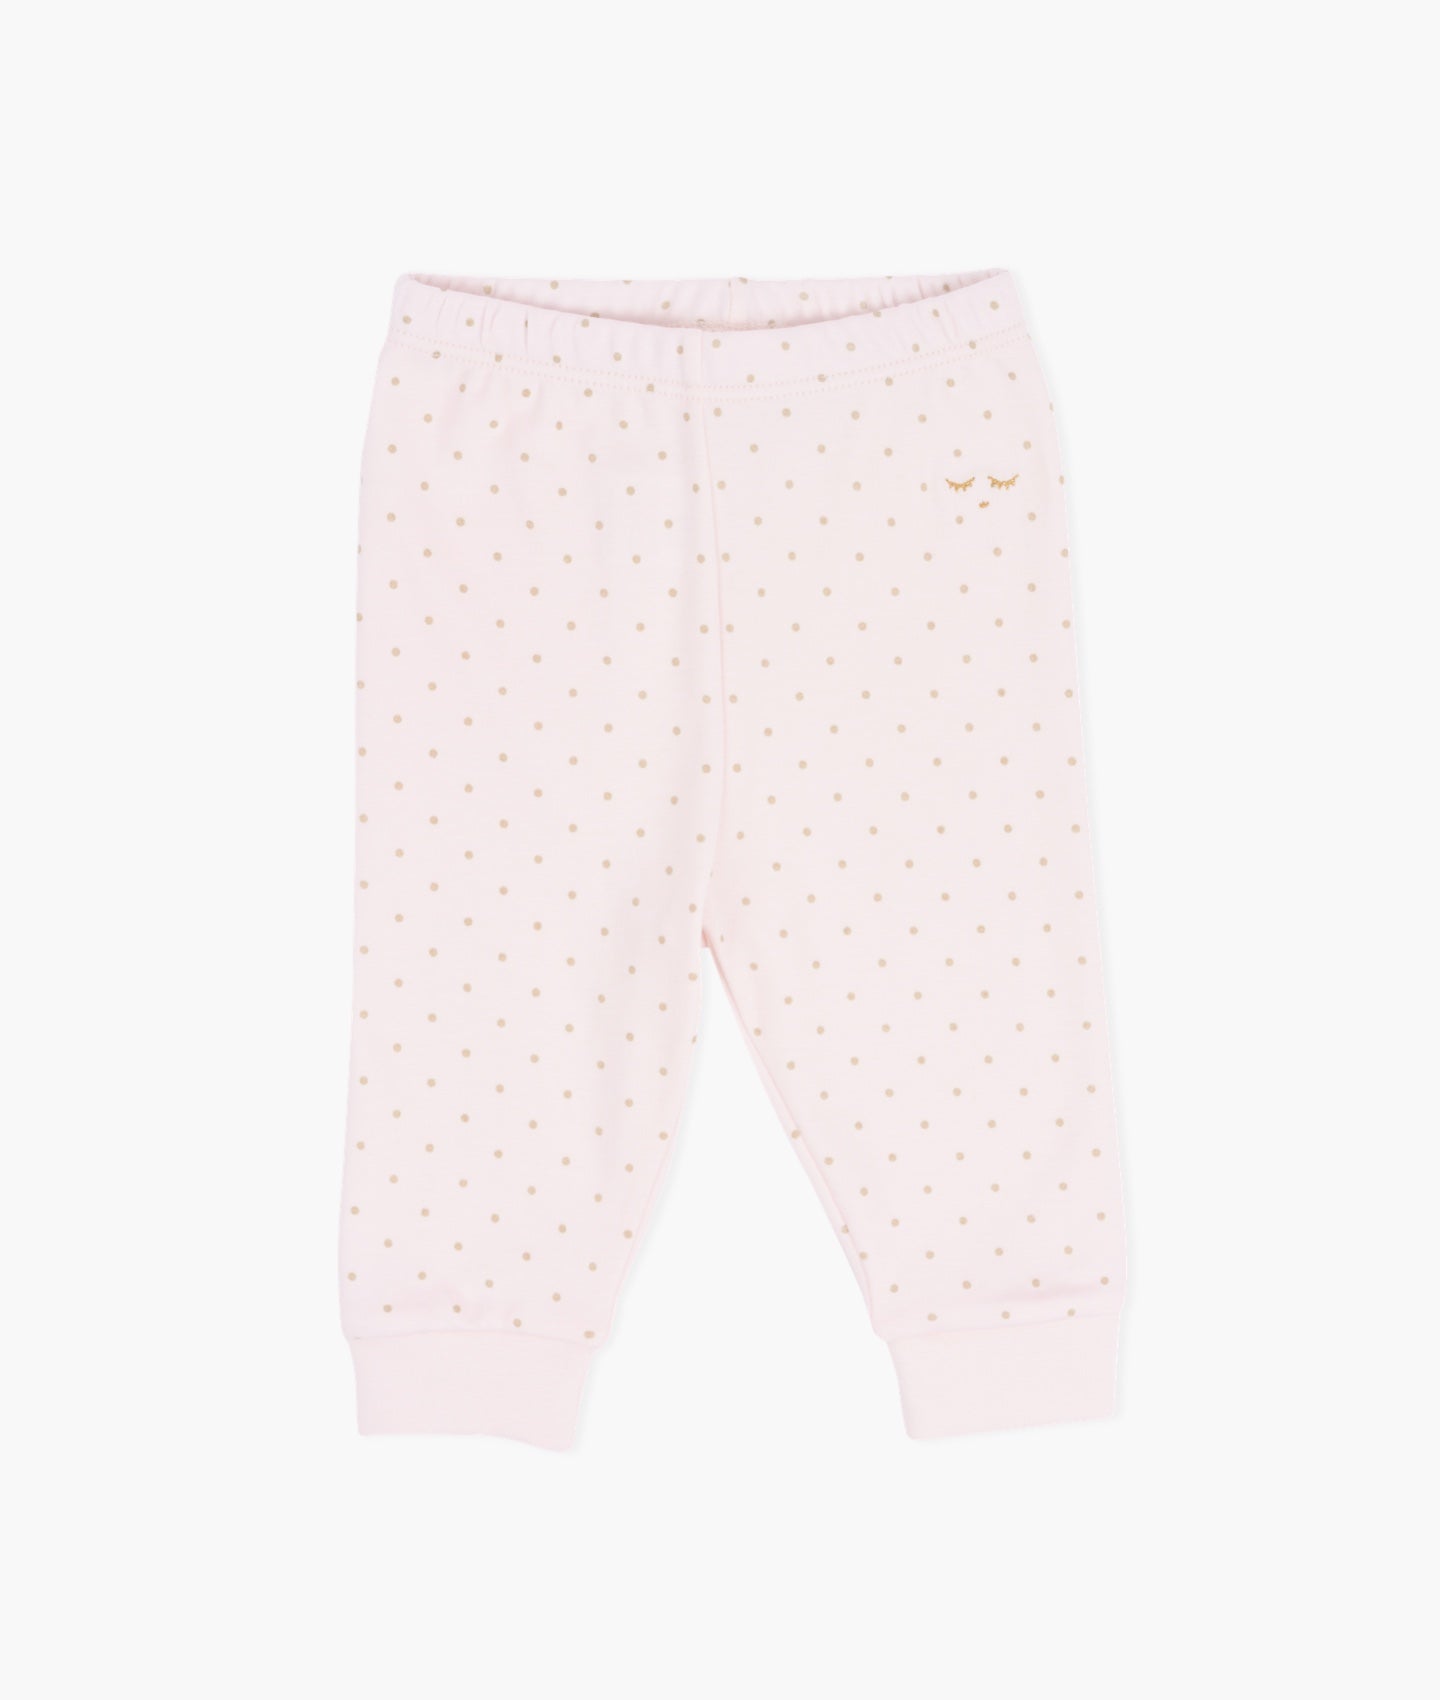 Saturday Pants Pink/Gold Dots